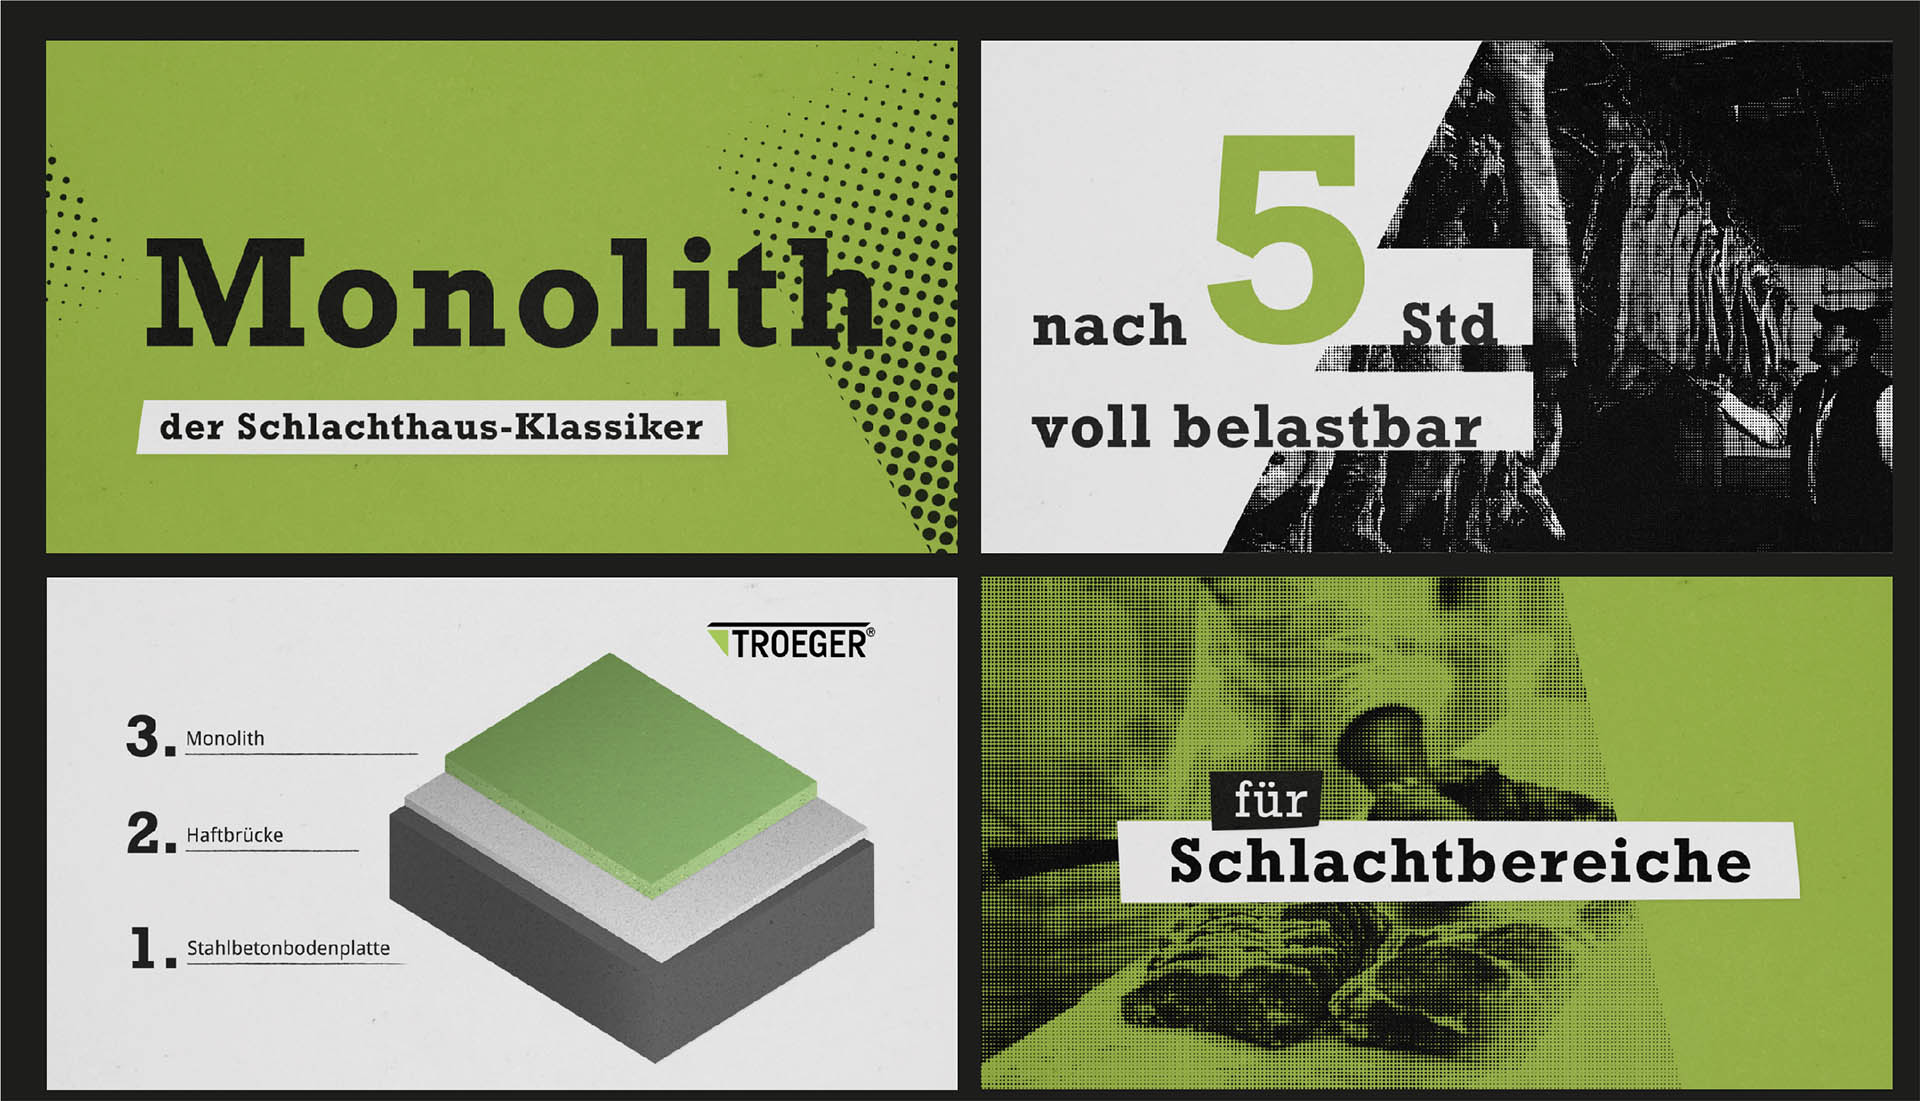 Troeger, Würzburg - Veitshöchheim, Design Videoanimation Storyboard 01, Corporate Design, Werbung